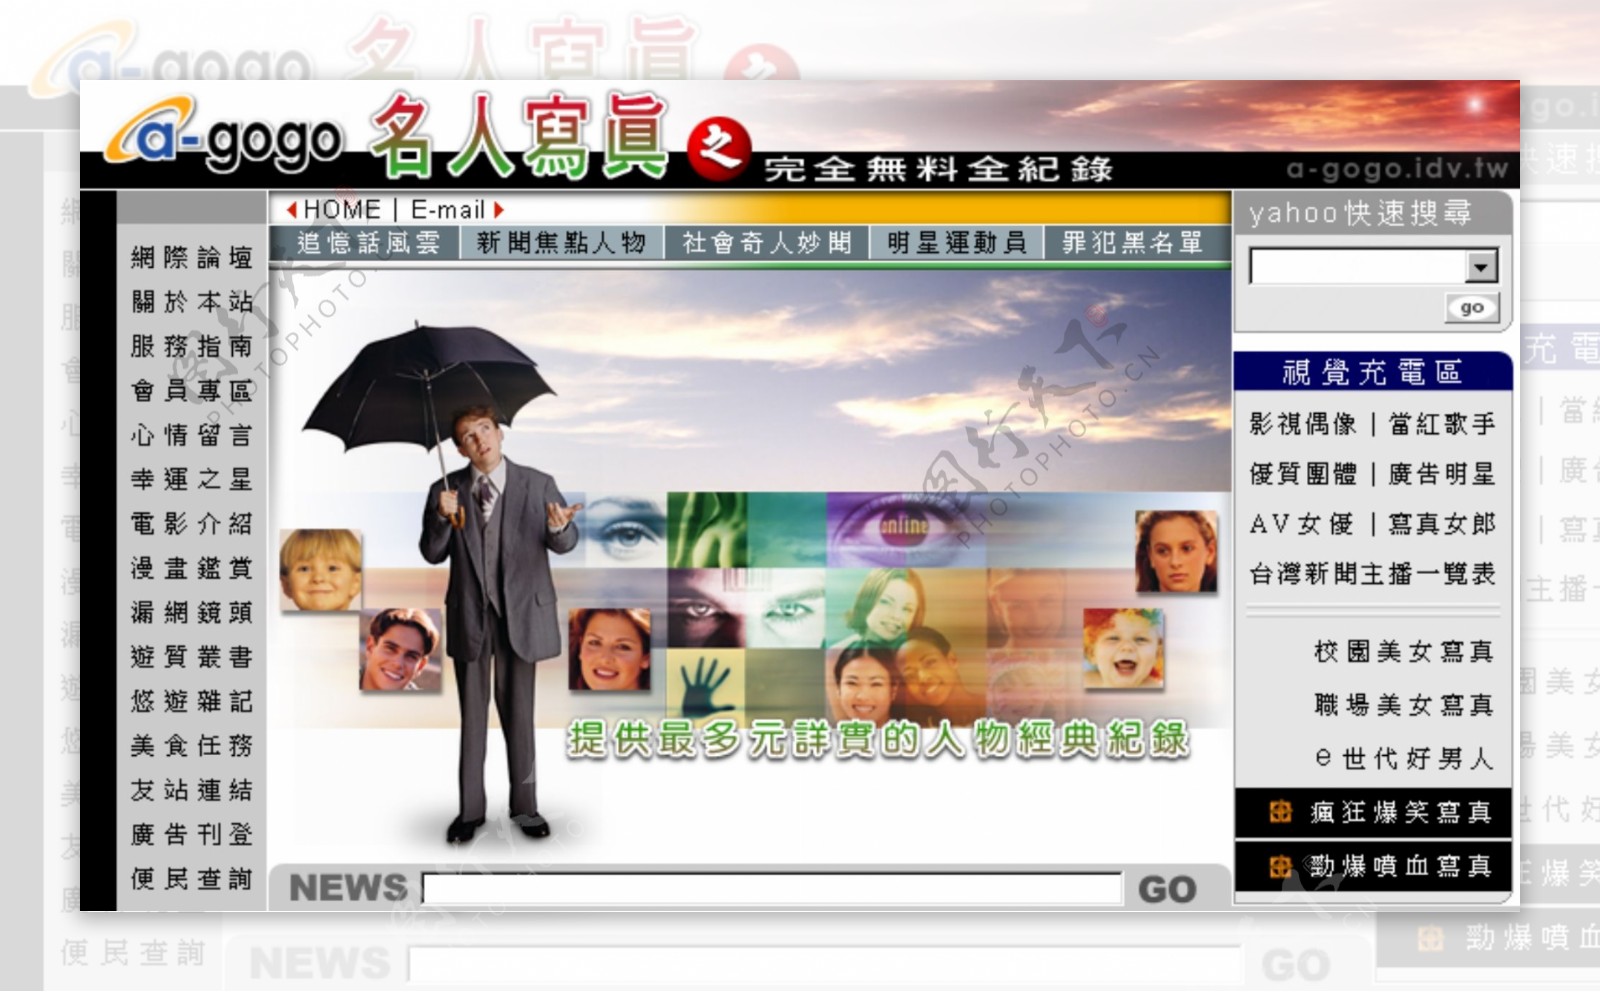 名人写真网站中文模板